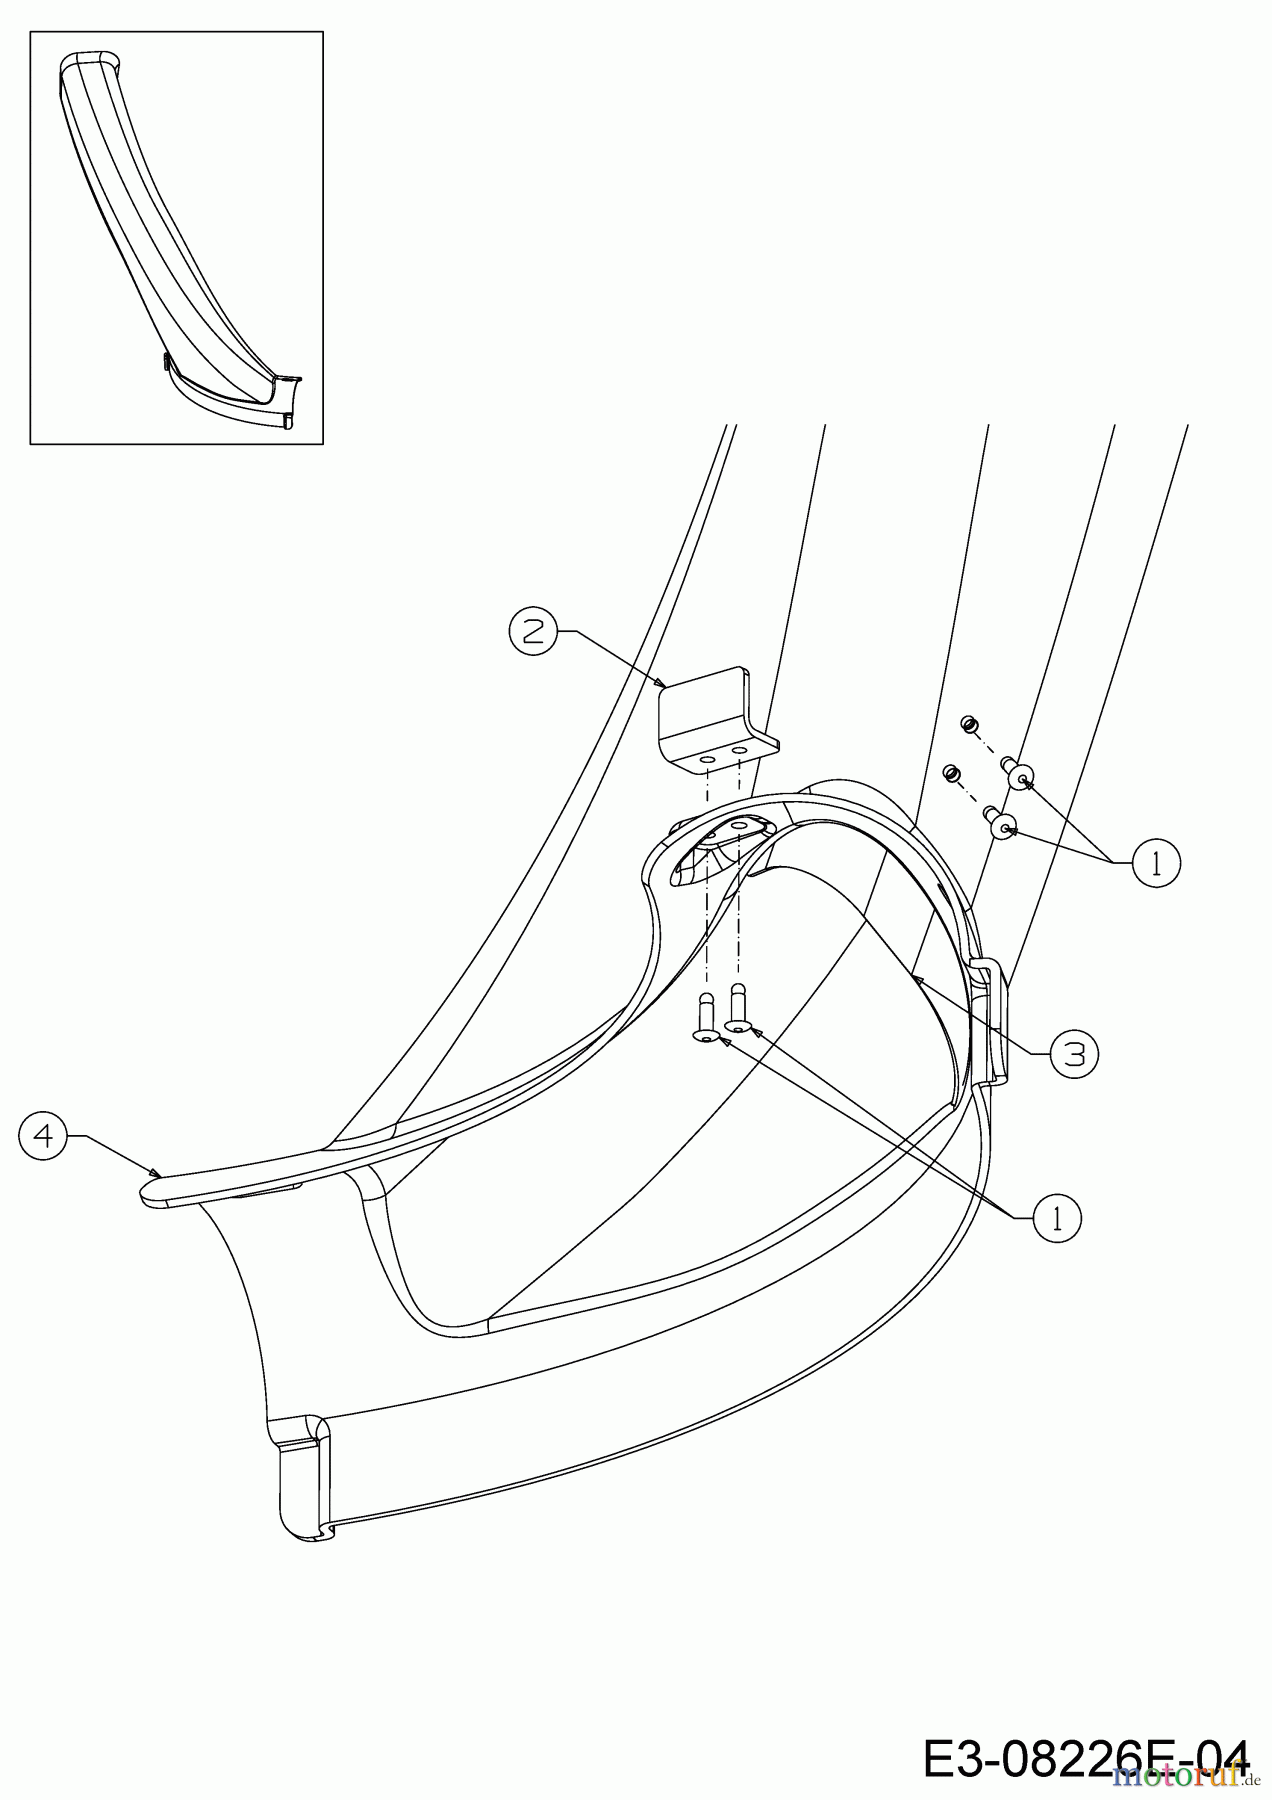  WOLF-Garten Expert Rasentraktoren Scooter Pro 13B226HD650  (2017) Auswurfschacht